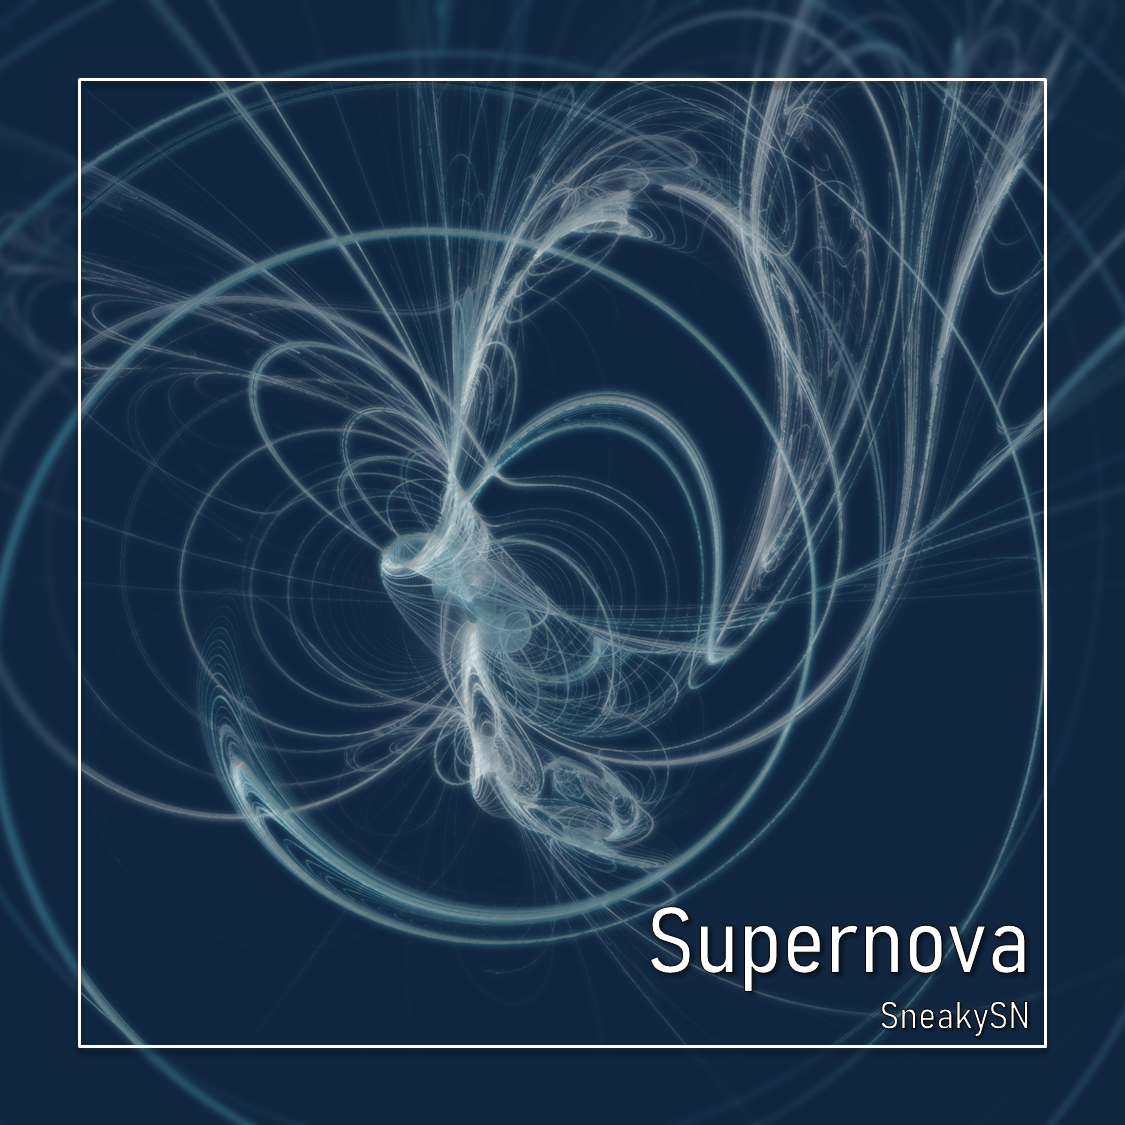 Supernova album cover